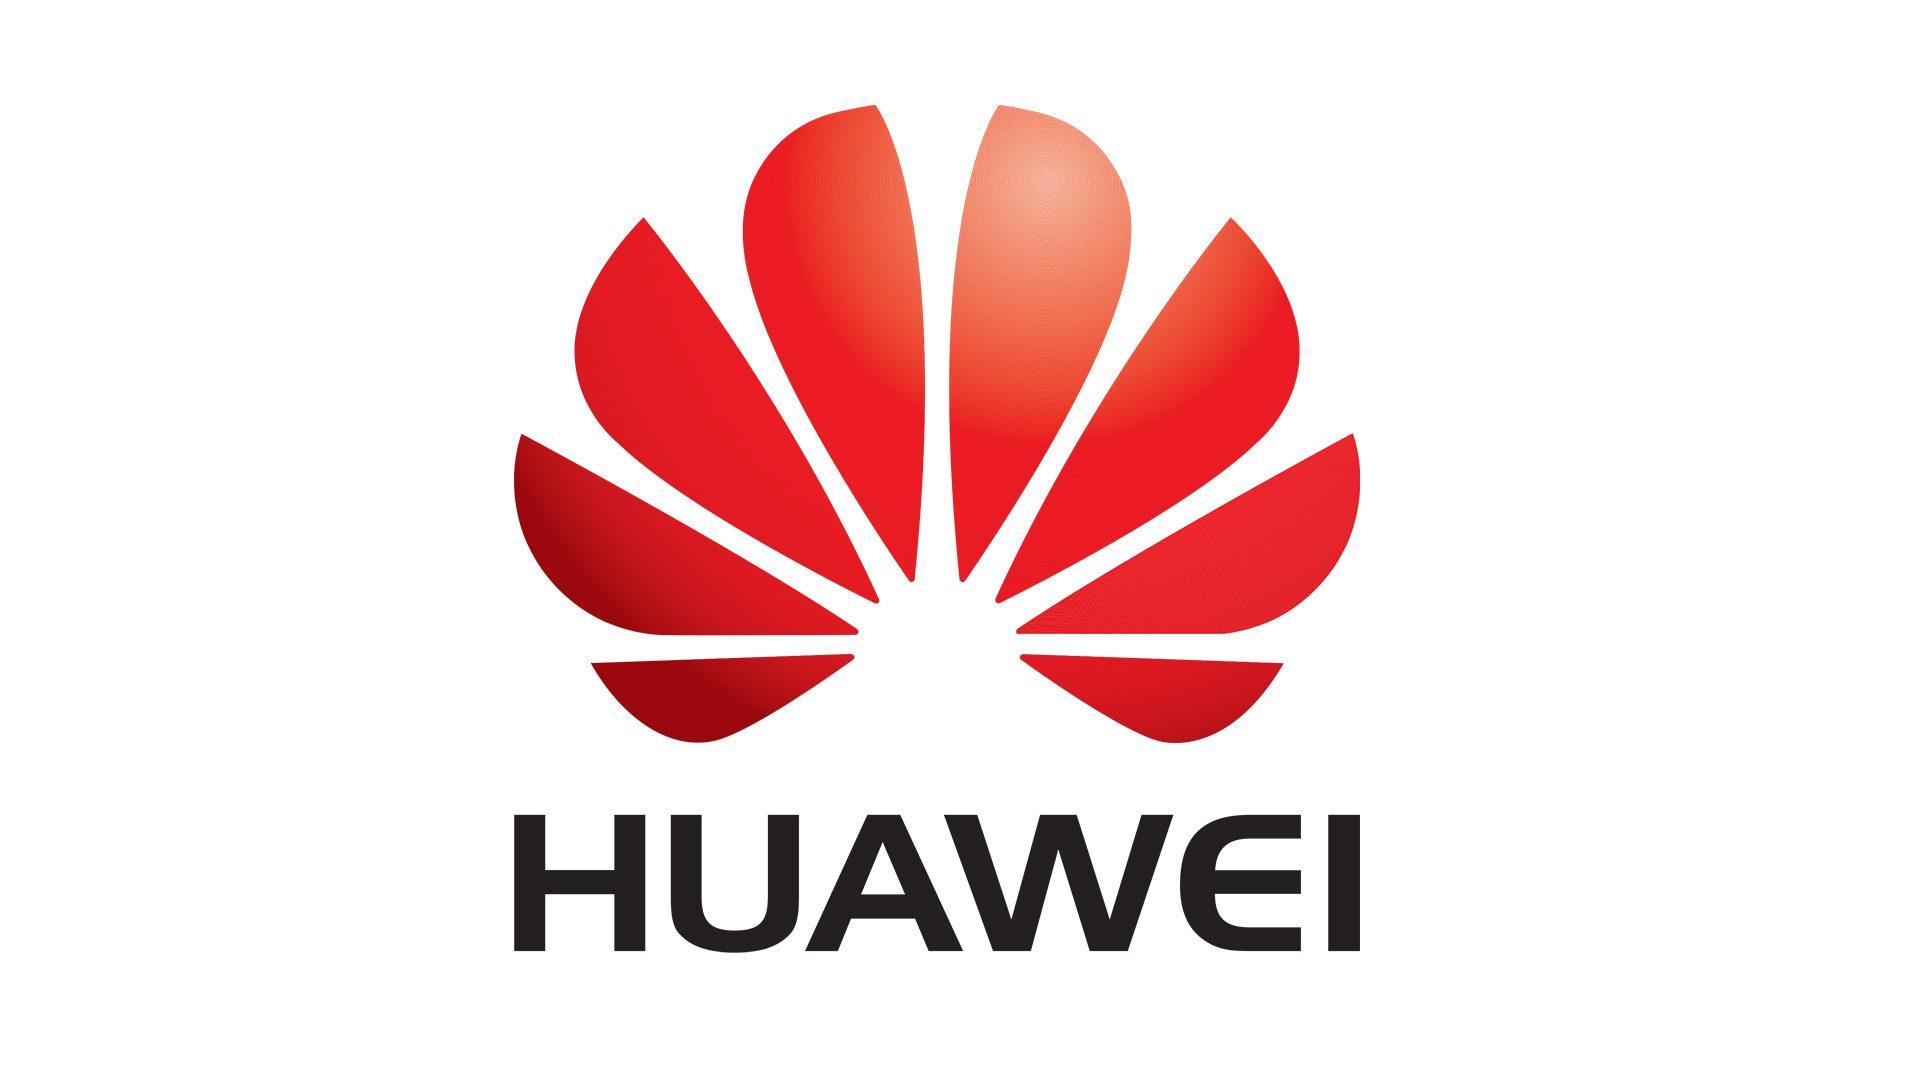 White Huawei Logo - Huawei Logo Wallpaper In Plain White Background | PaperPull